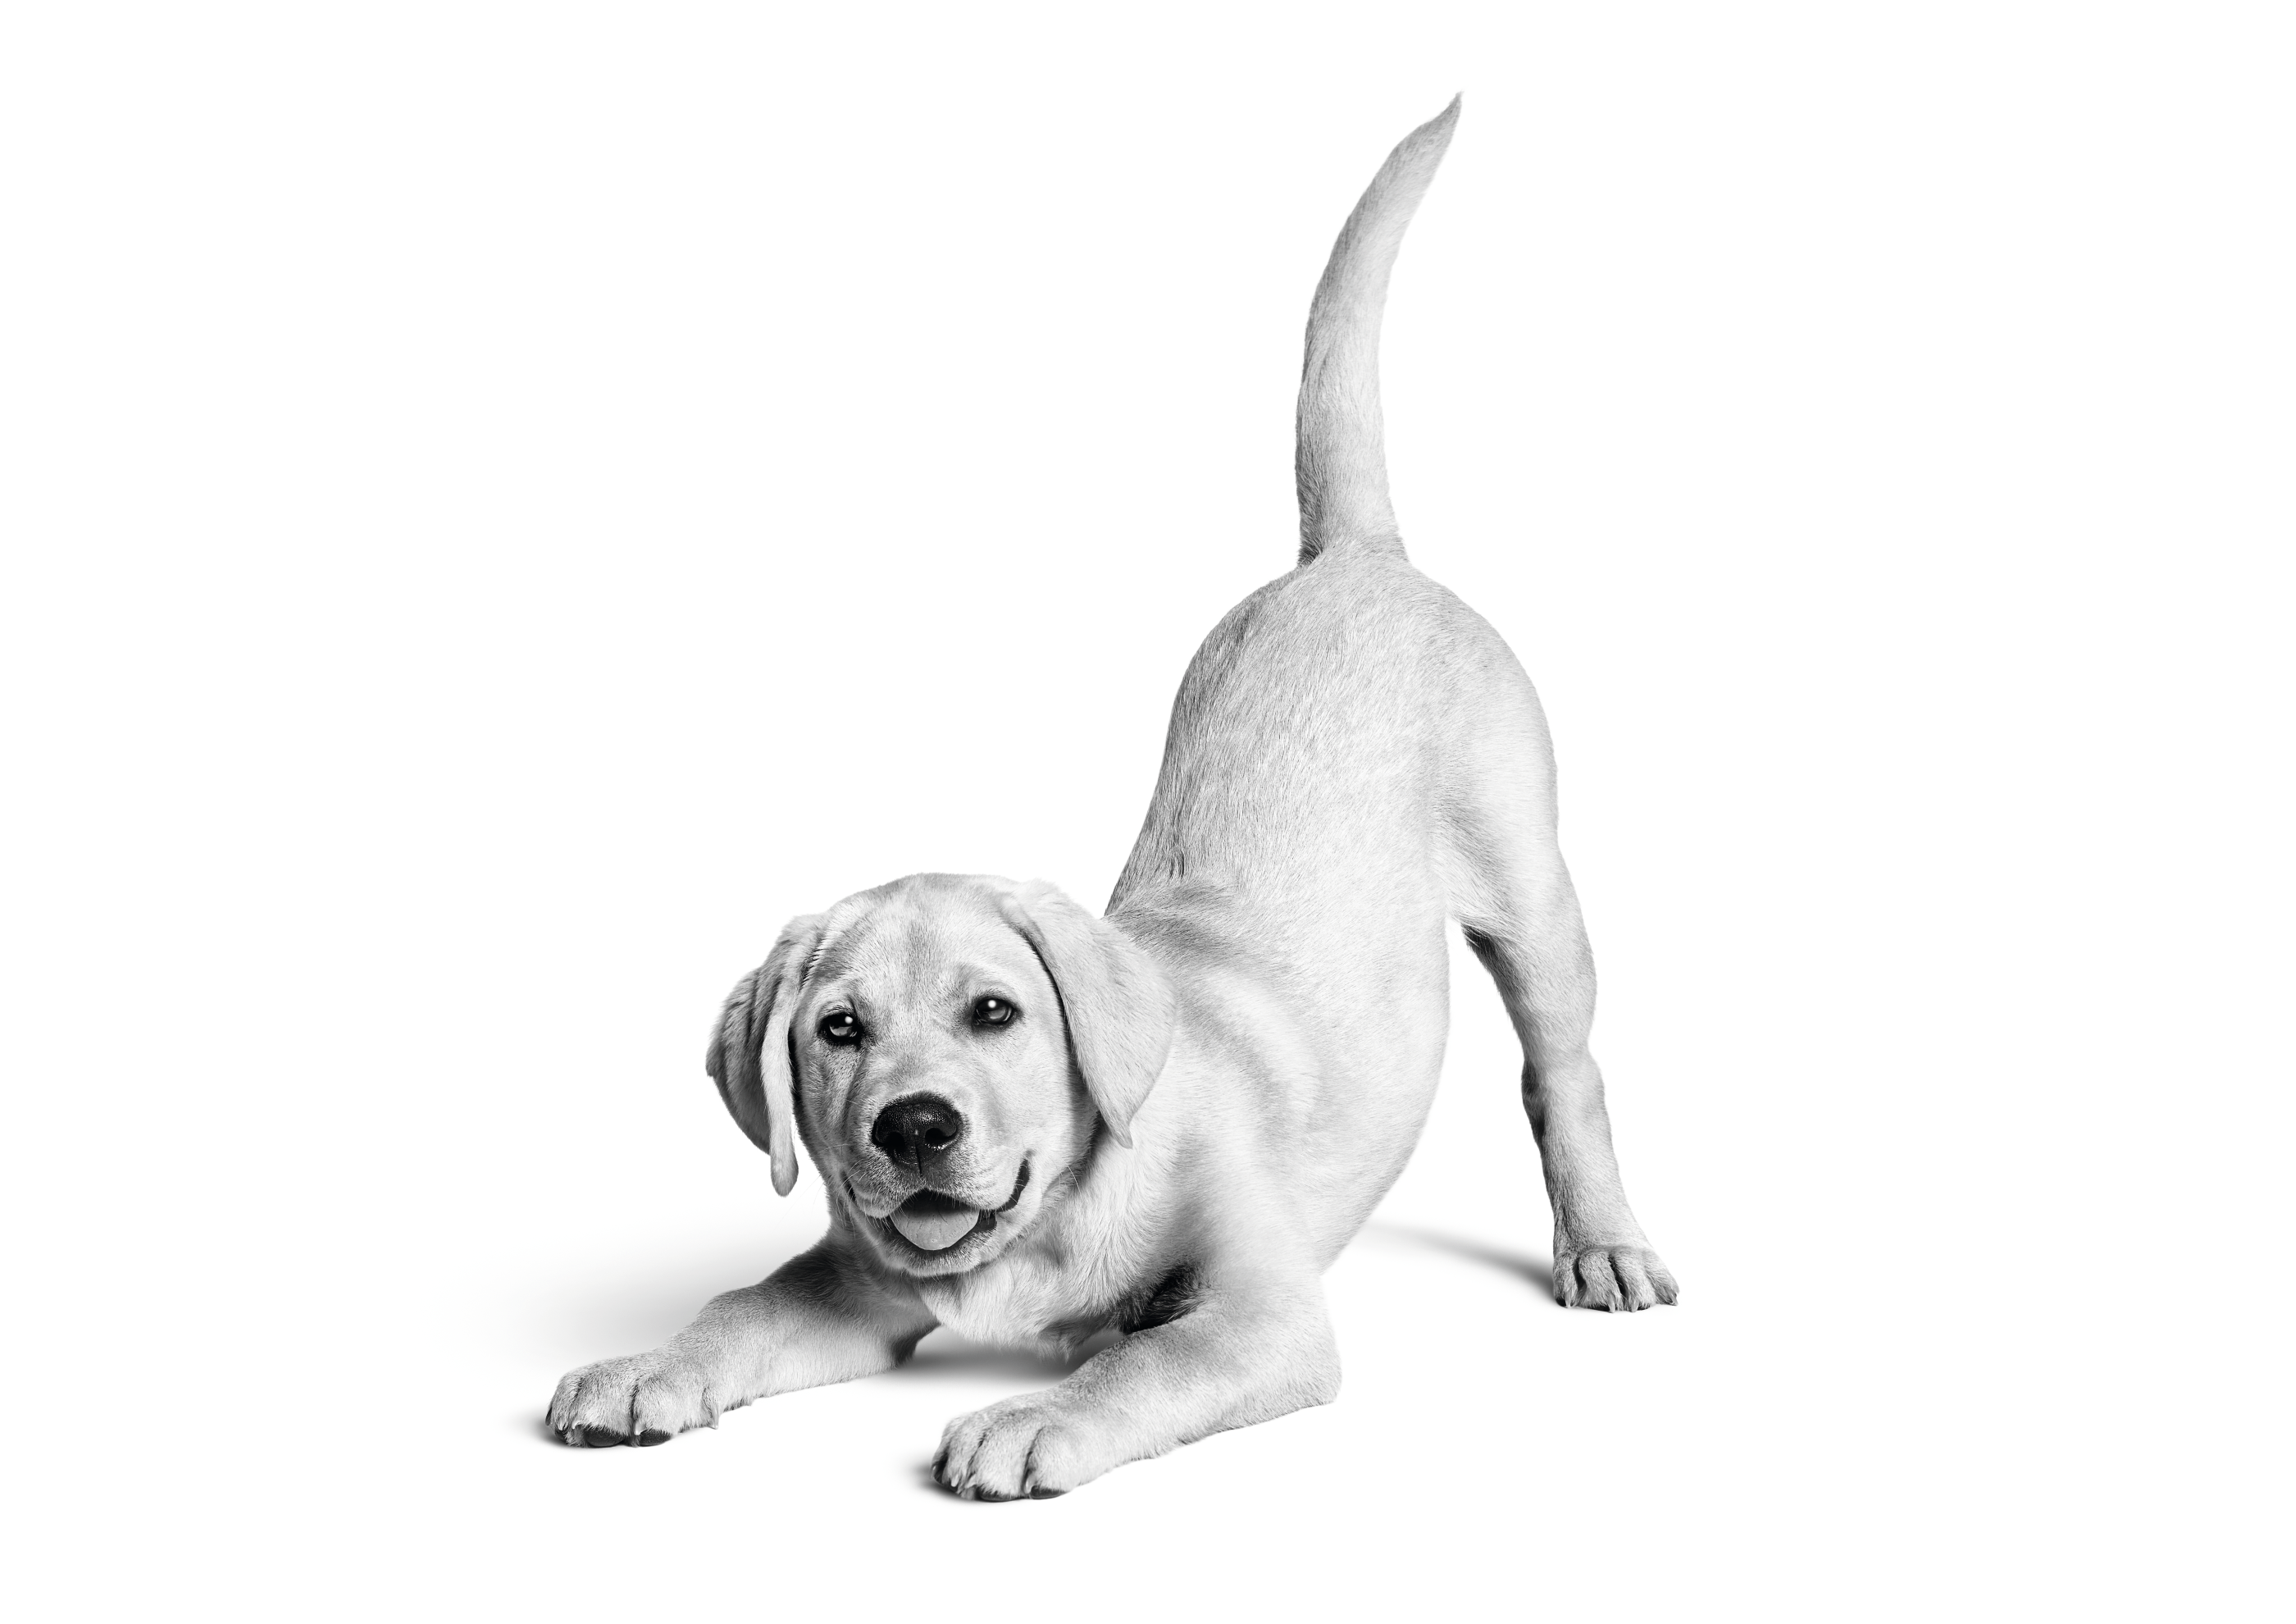 Cucciolo di Labrador Retriever che gioca accovacciato in bianco e nero su sfondo bianco